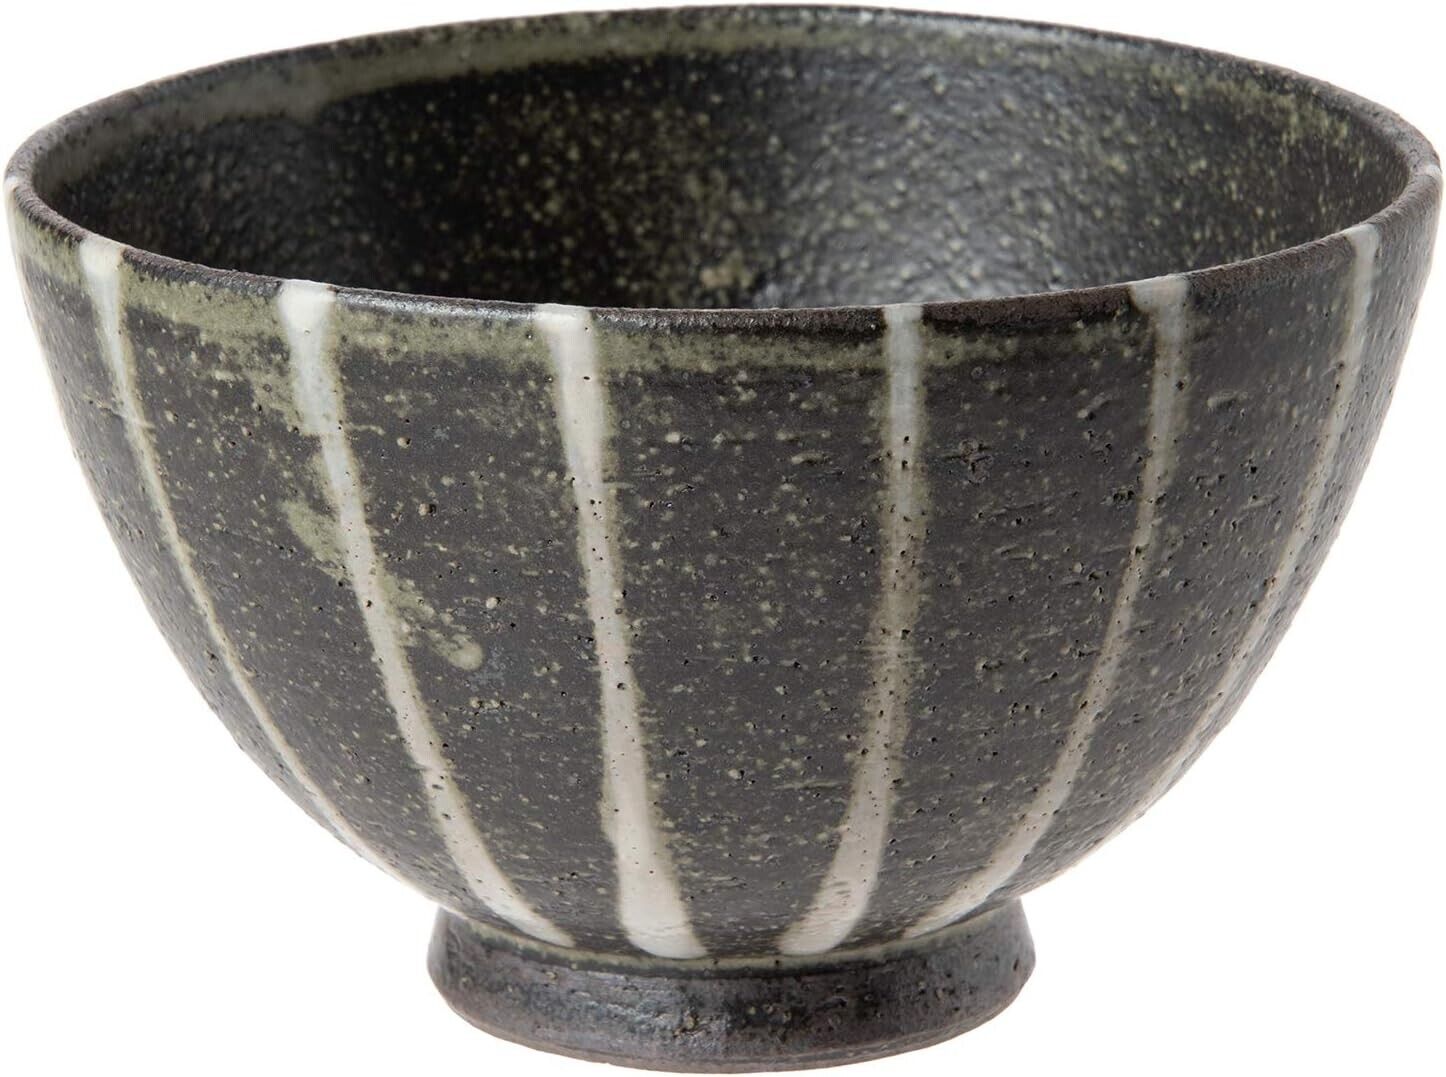 Shigaraki yaki ware Gohan Chawan Japanese Pottery Rice bowl Takishima Stripe F/S